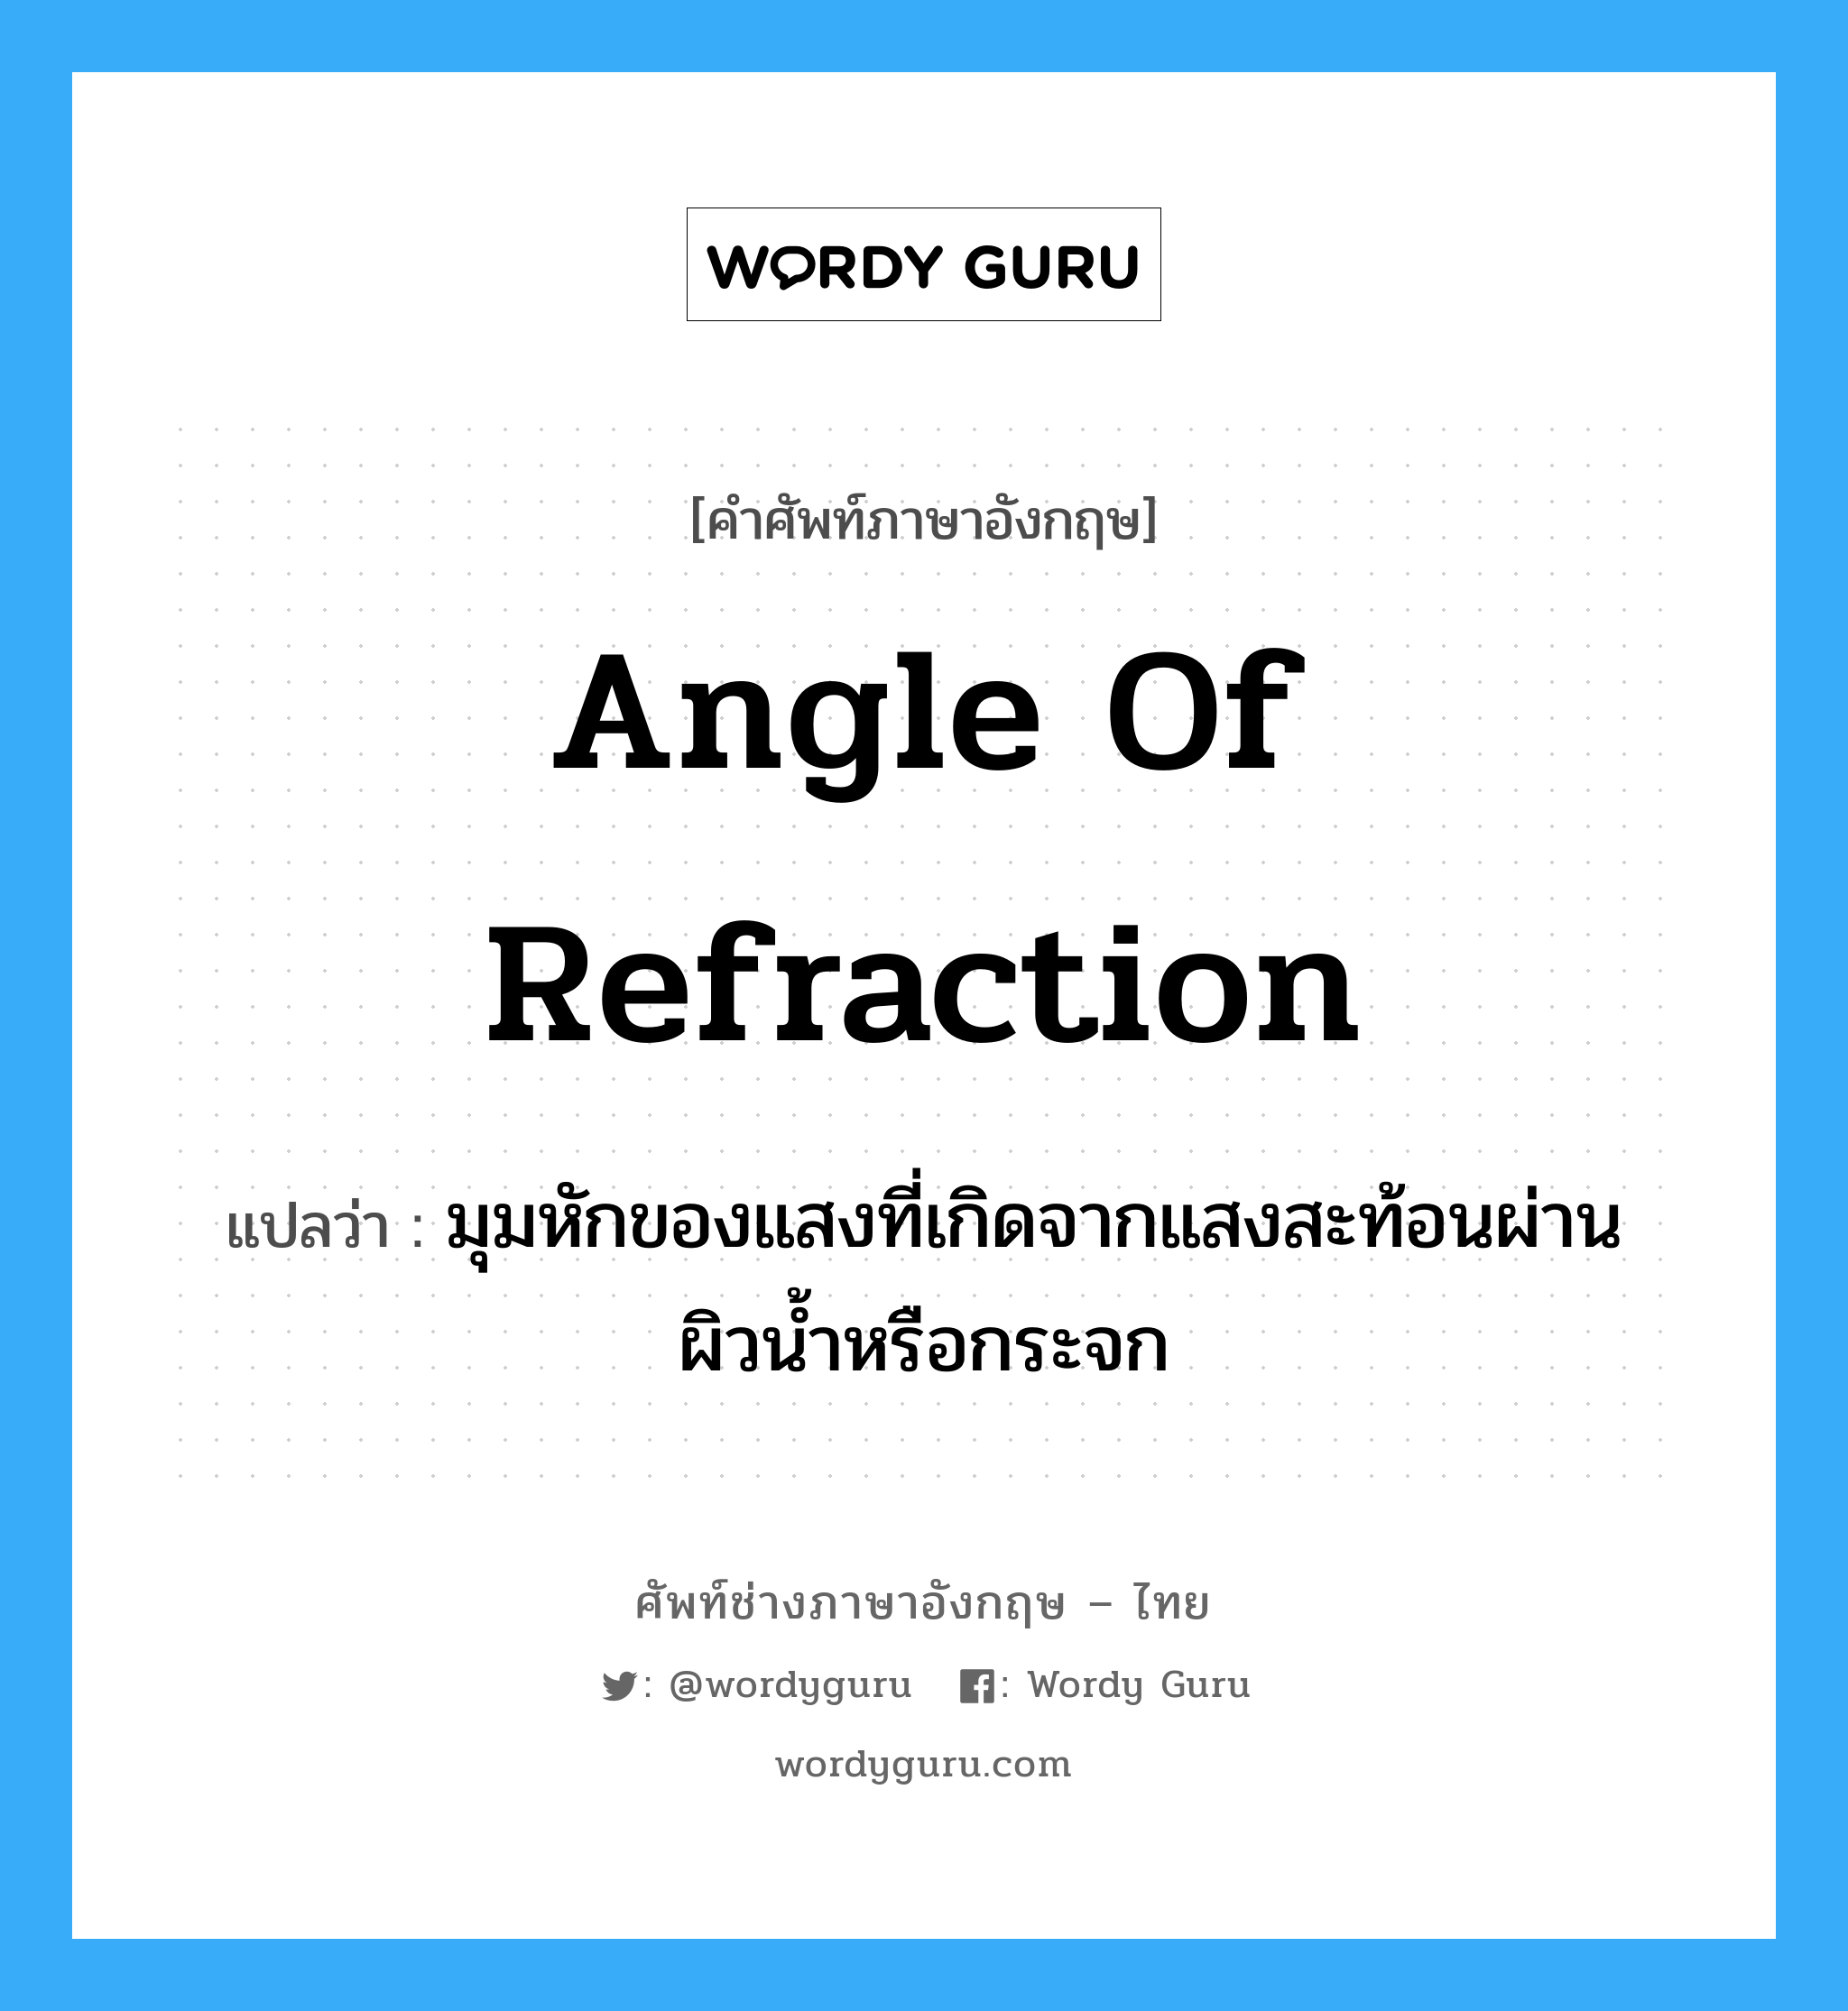 angle of refraction แปลว่า?, คำศัพท์ช่างภาษาอังกฤษ - ไทย angle of refraction คำศัพท์ภาษาอังกฤษ angle of refraction แปลว่า มุมหักของแสงที่เกิดจากแสงสะท้อนผ่านผิวน้ำหรือกระจก